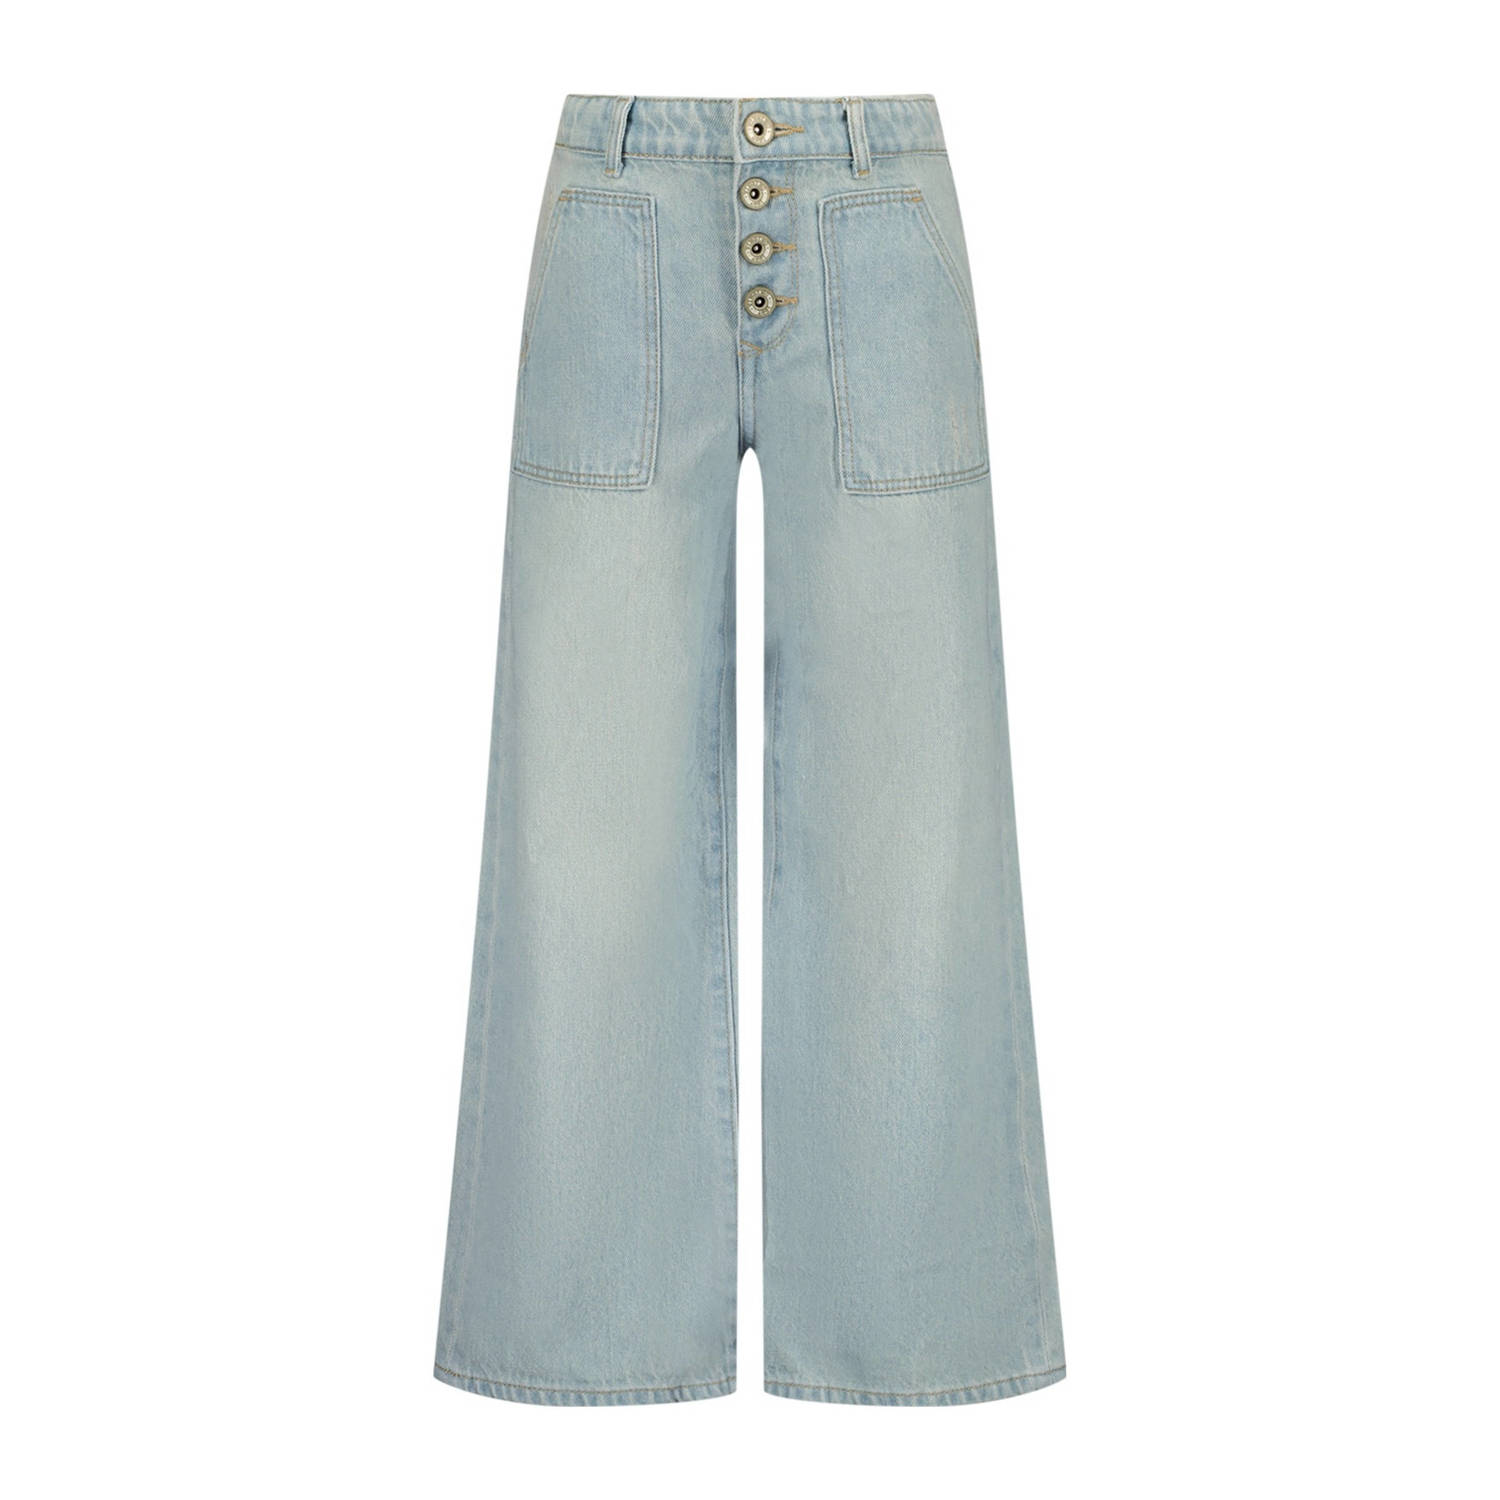 VINGINO high waist wide leg jeans Cassie light vintage Blauw Meisjes Denim 158